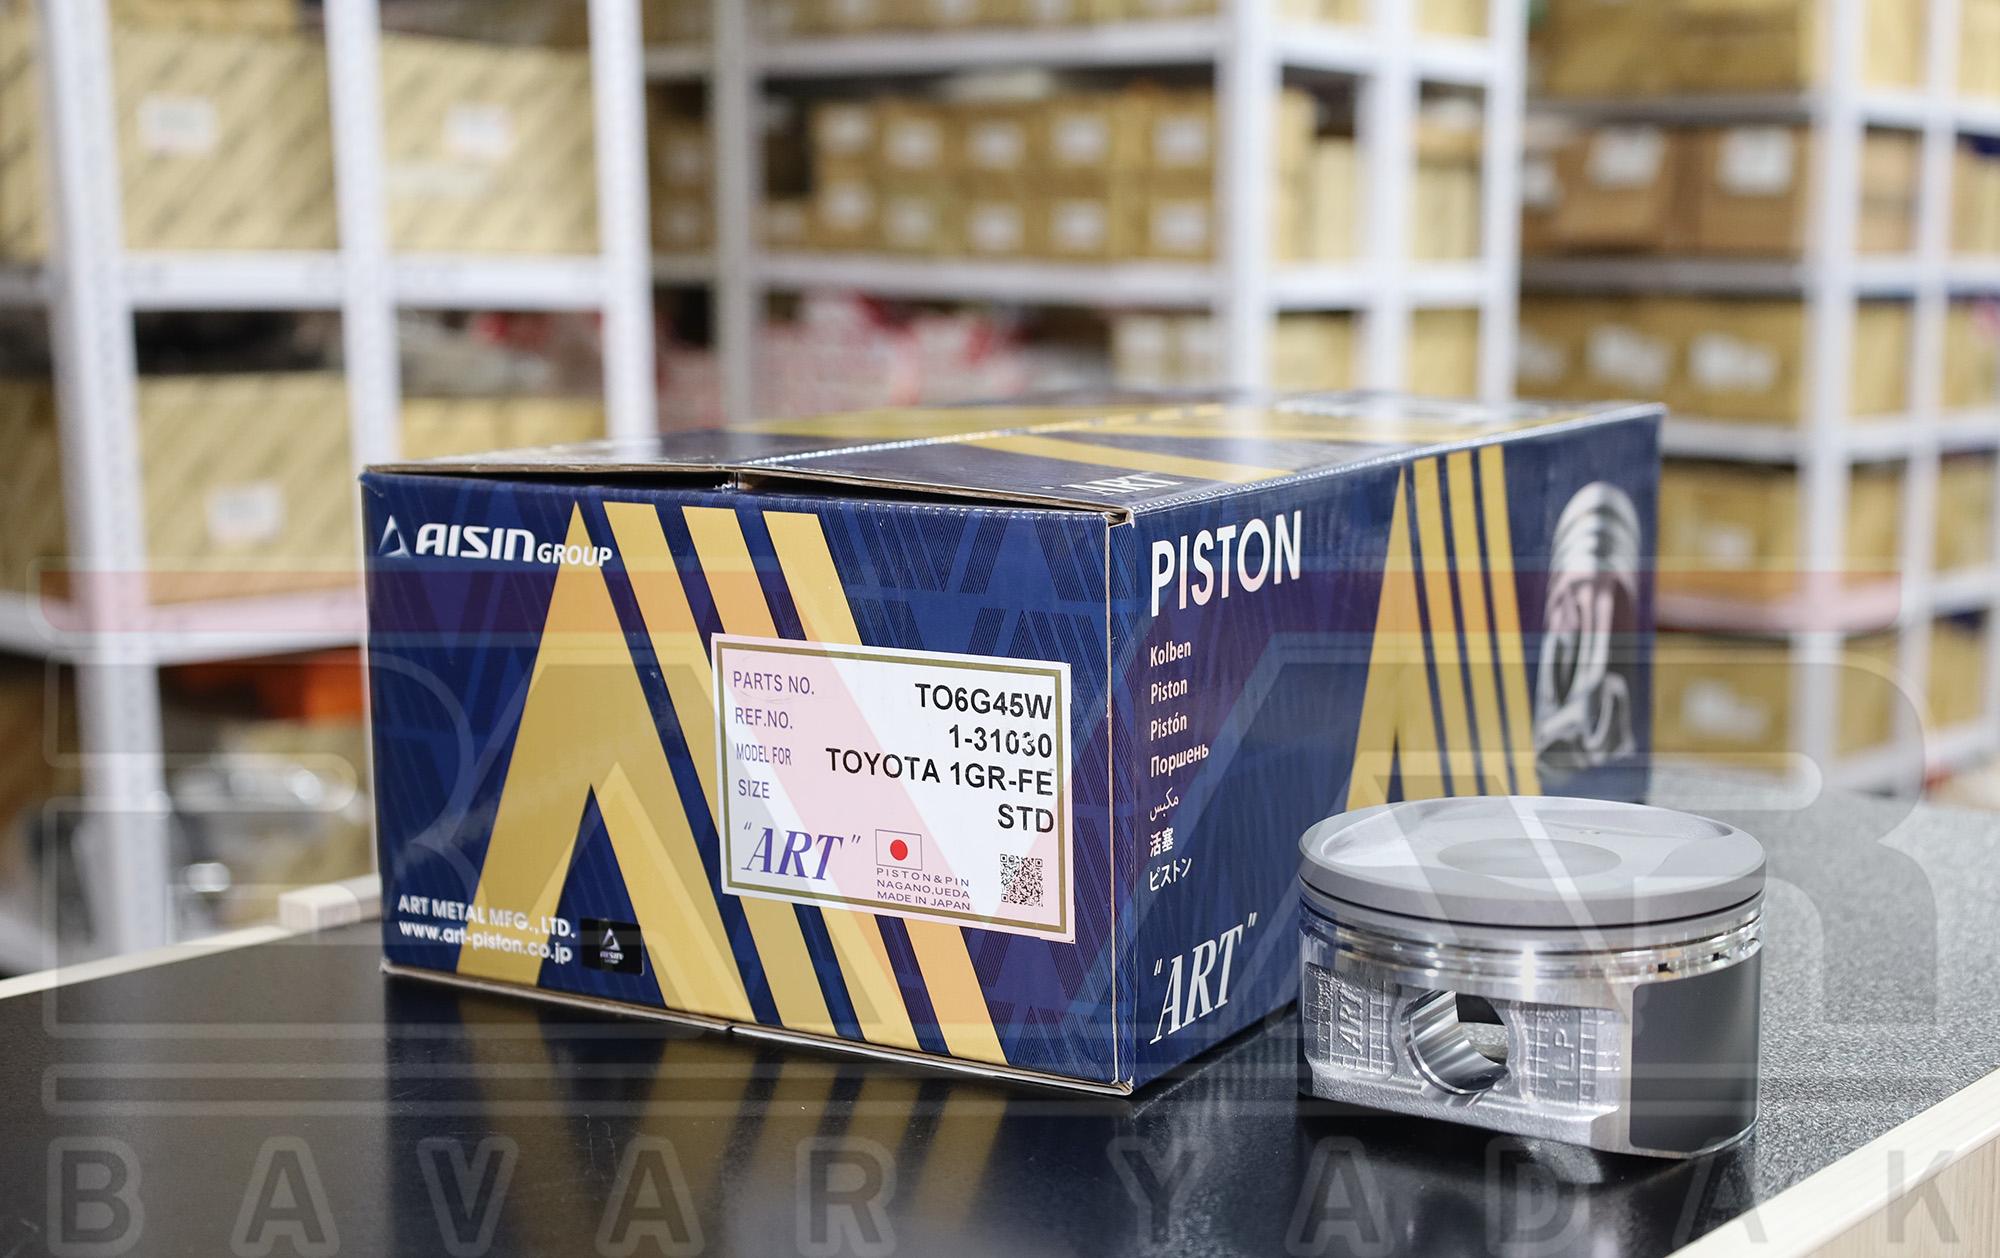 پیستون موتور 1GR استاندارد FJ سال 2011 تا 2018 برند AISIN پک 6 عددی